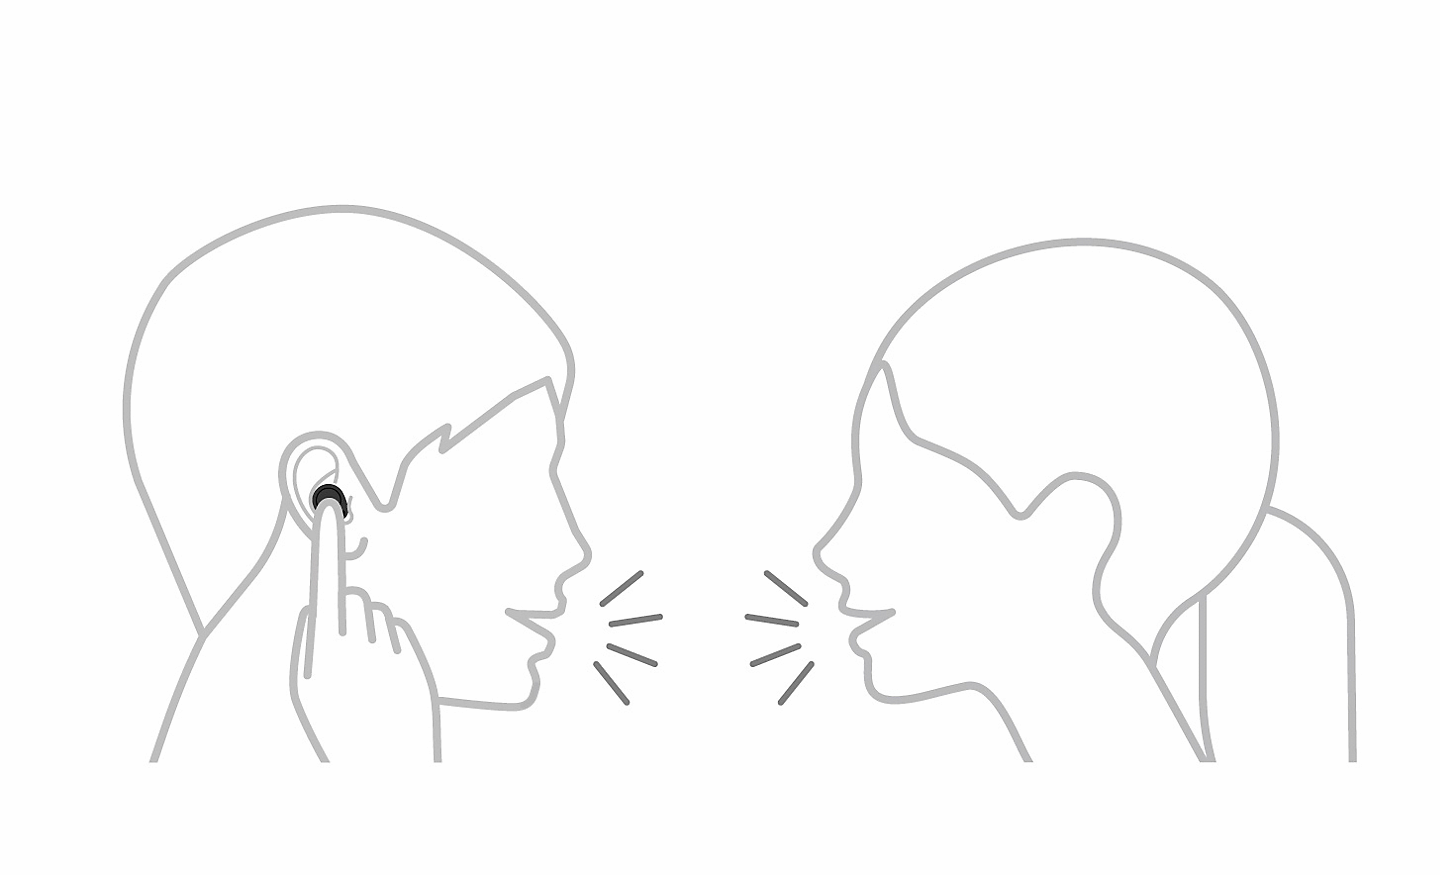 Kresba dvou osob, které spolu hovoří, jedna z nich se prstem dotýká sluchátka. Vlevo nahoře se nachází ikona pro pozastavení